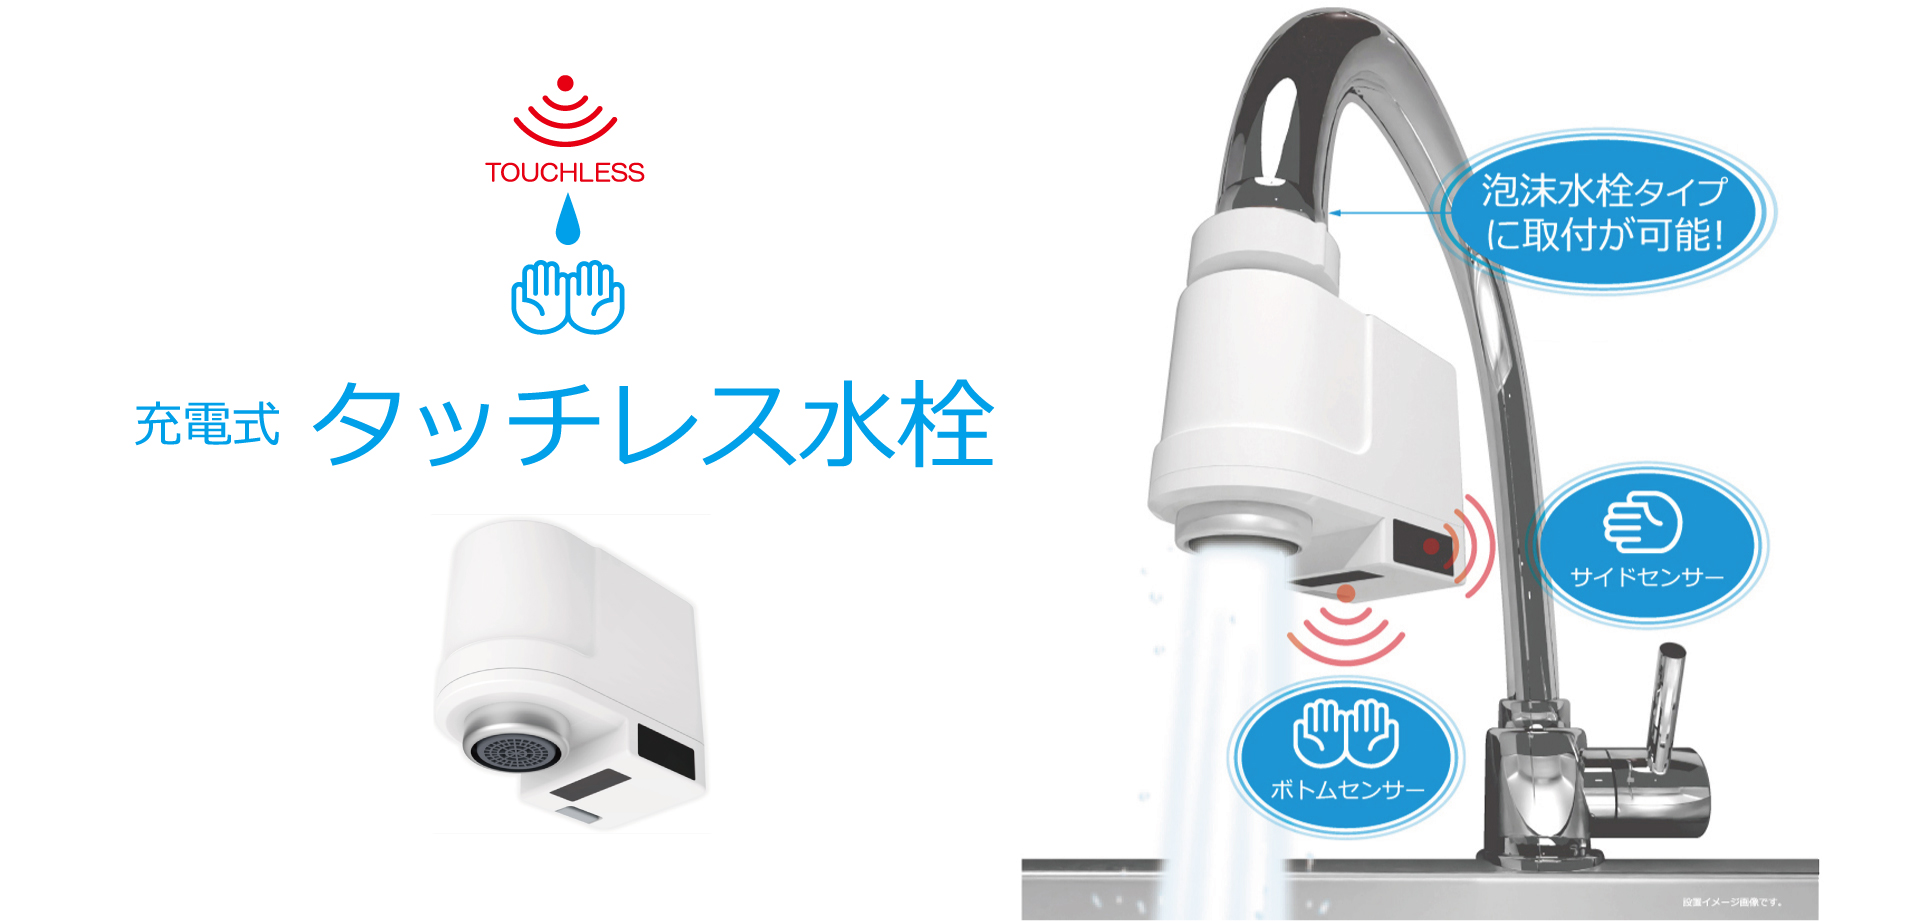 発売モデル 日本電興 充電式タッチレス水栓 ND-TJS2S